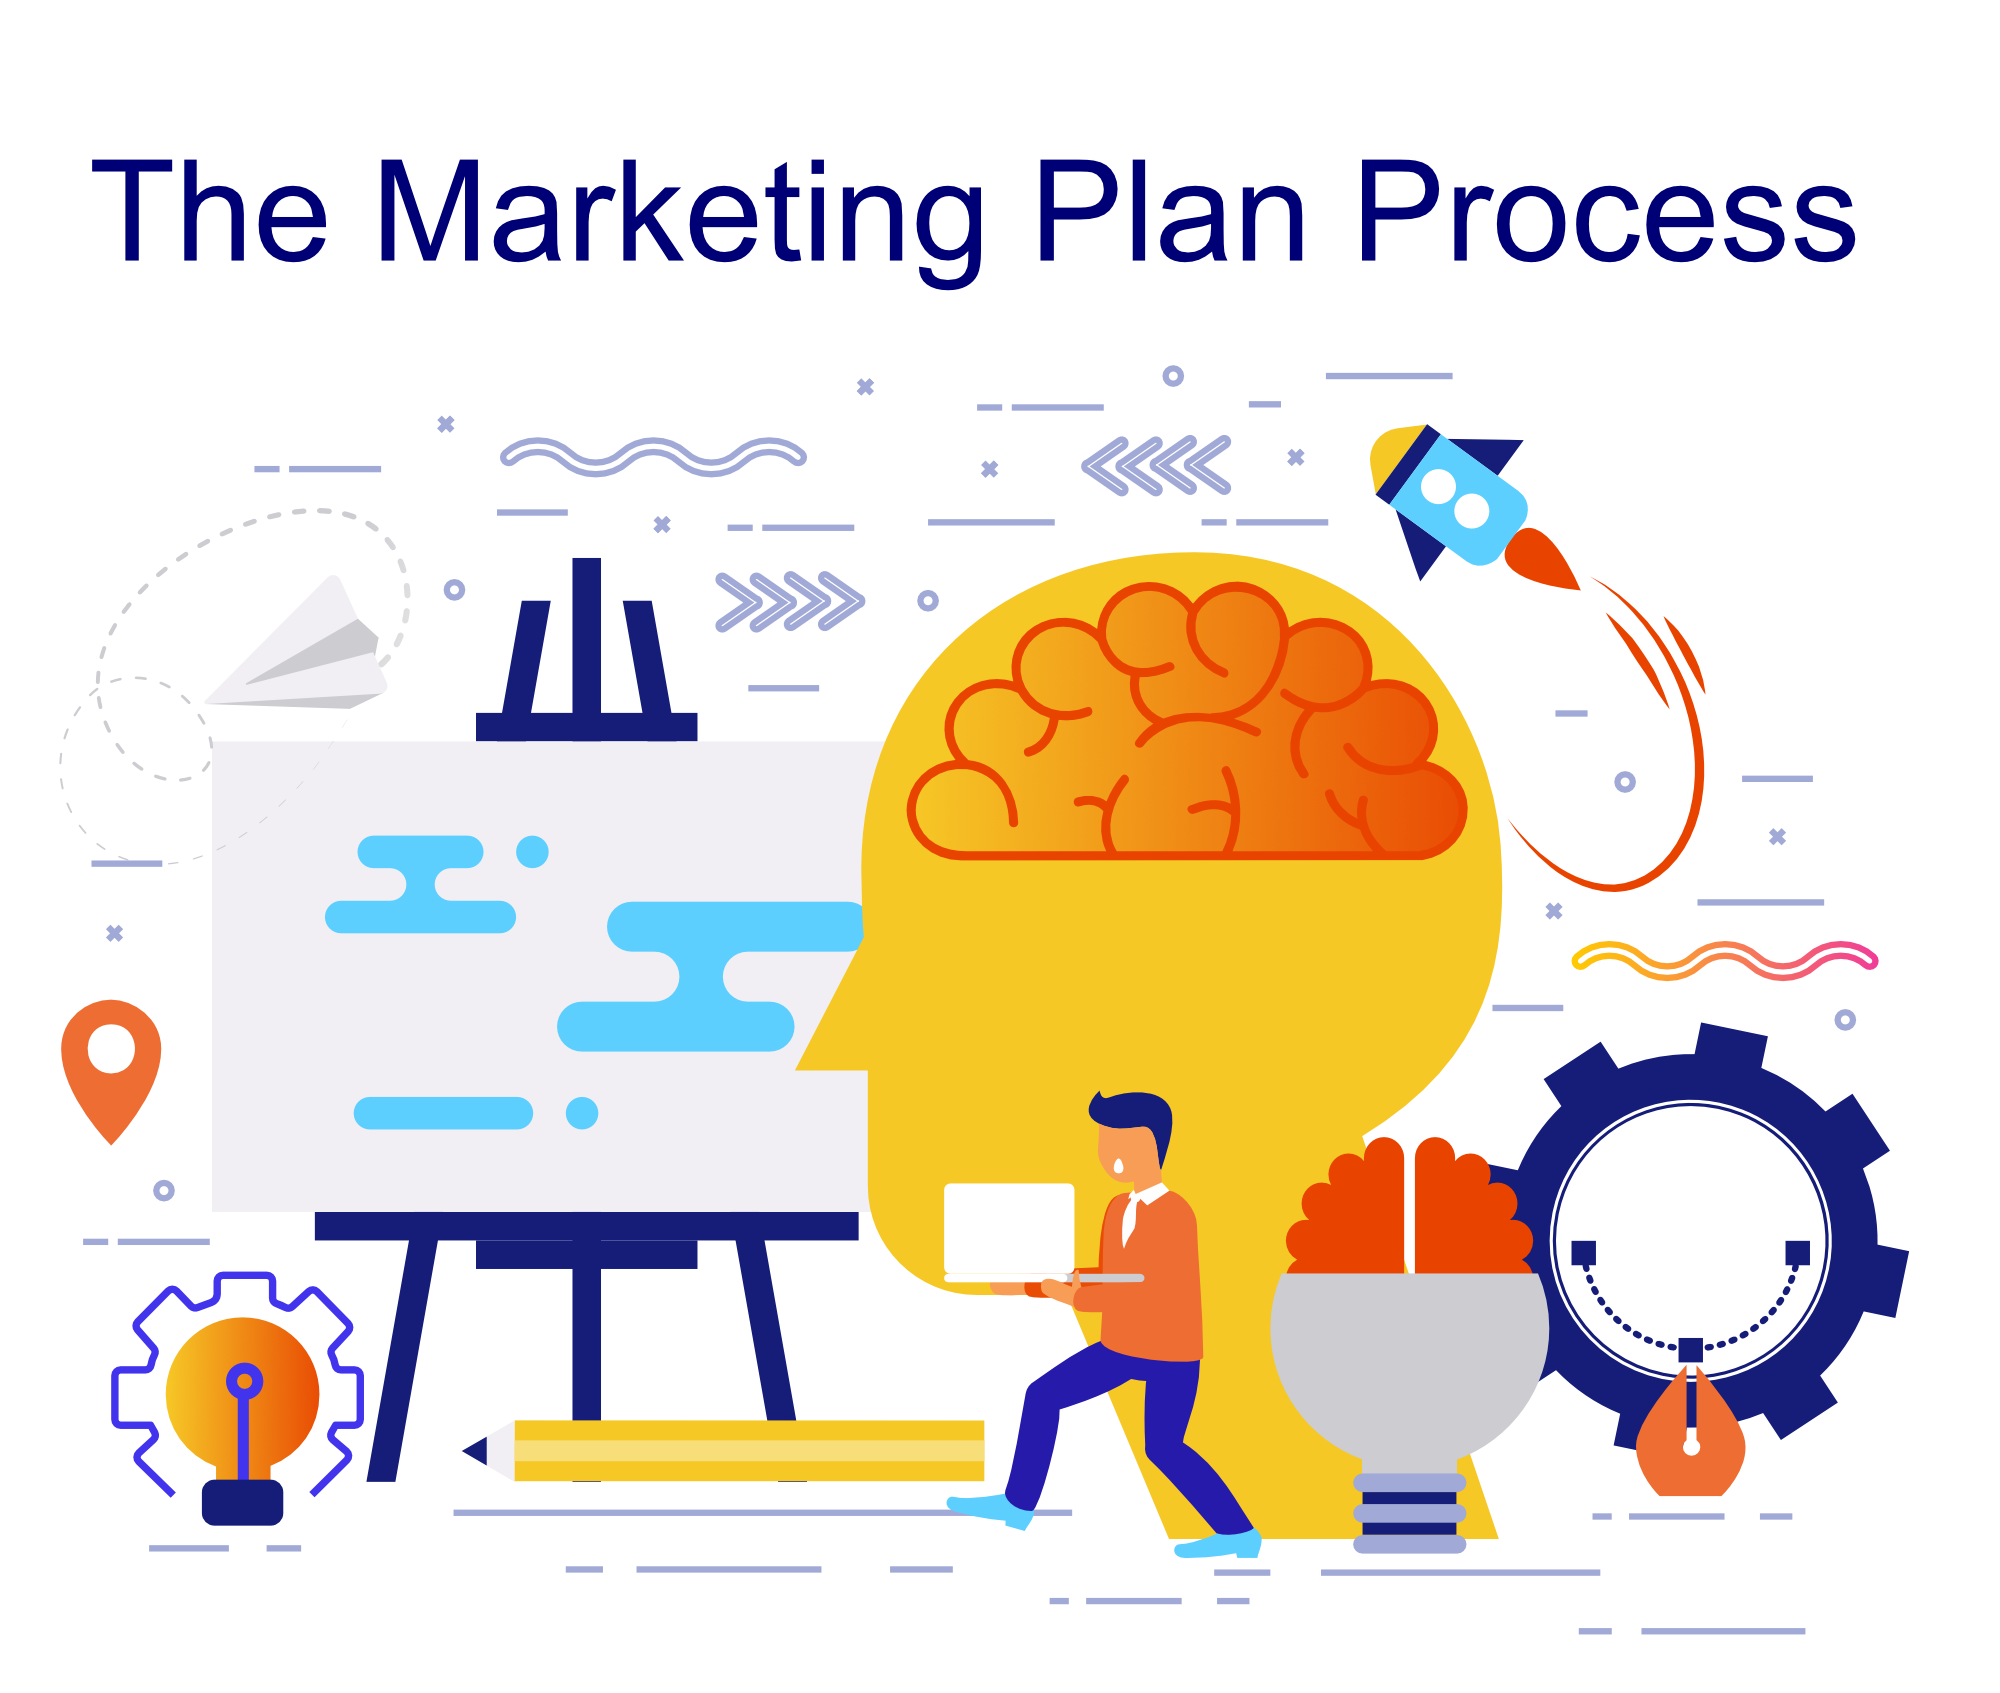 
Marketing plan chính là những kế hoạch marketing cho một sản phẩm, dịch vụ, mặt hàng nào đó của một doanh nghiệp.
